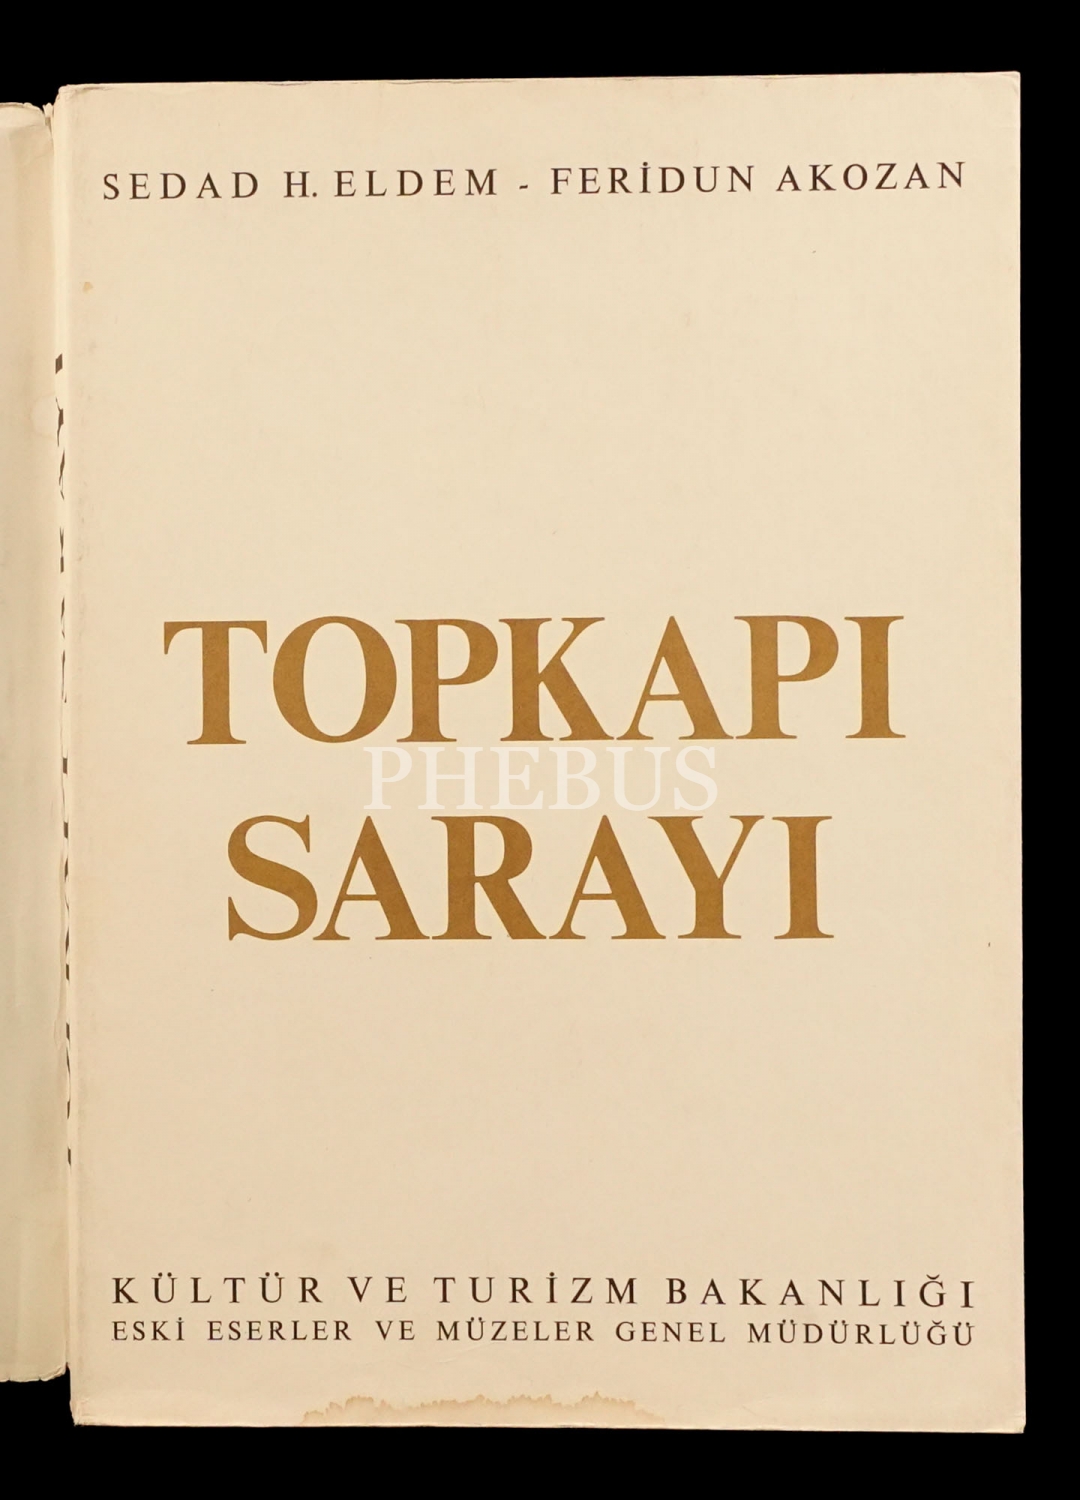 TOPKAPI SARAYI (Bir Mimari Araştırma), Sedad H. Eldem & Feridun Akozan, 1981, Kültür ve Turizm Bakanlığı Eski Eserler ve Müzeler Genel Müdürlüğü, 128 sayfa, 24x34 cm...